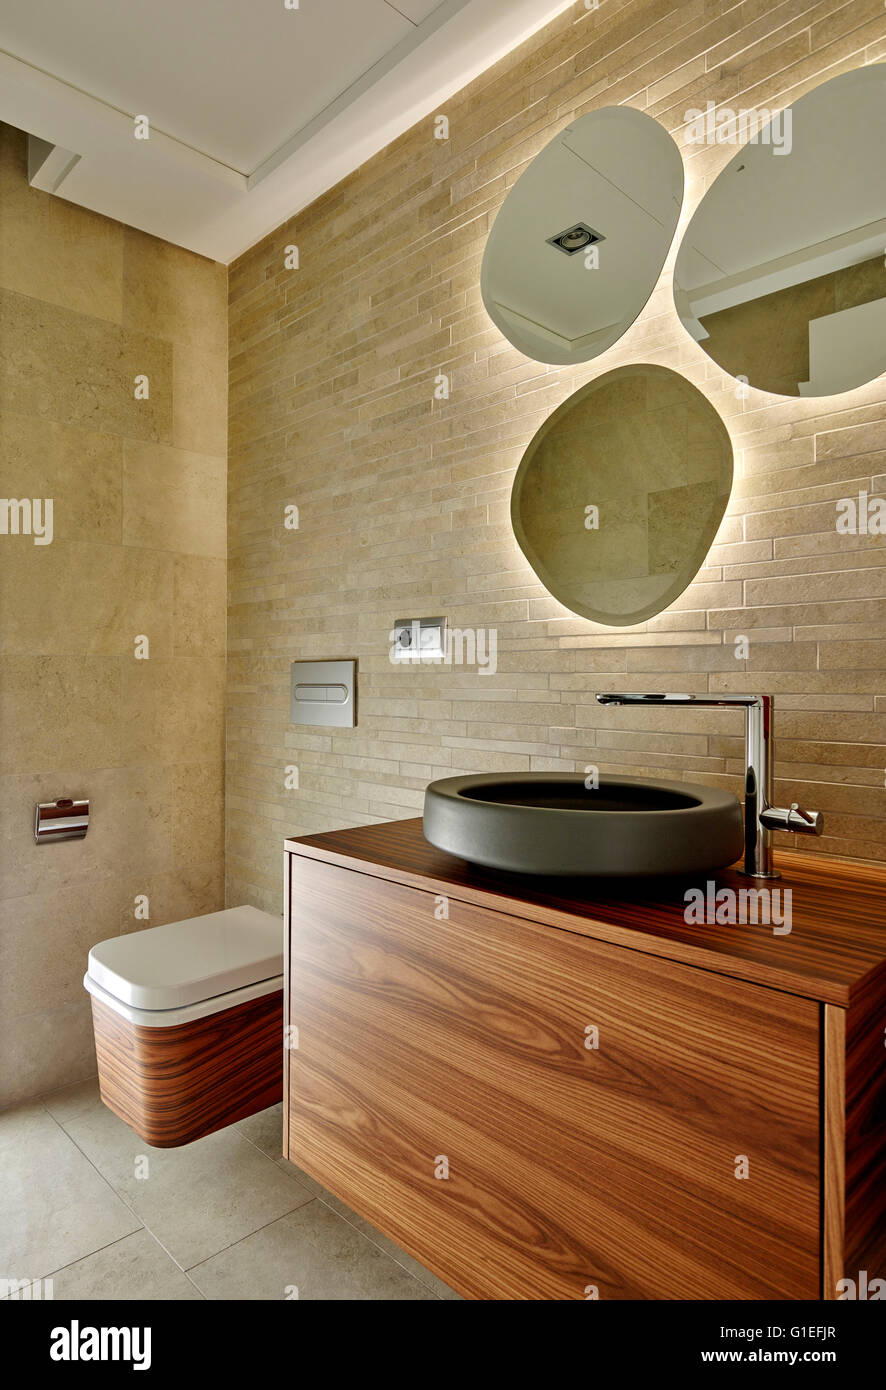 Maison Blanche, L'Ametlla. Salle de bains avec des éléments modernes et décoration minimaliste. Banque D'Images